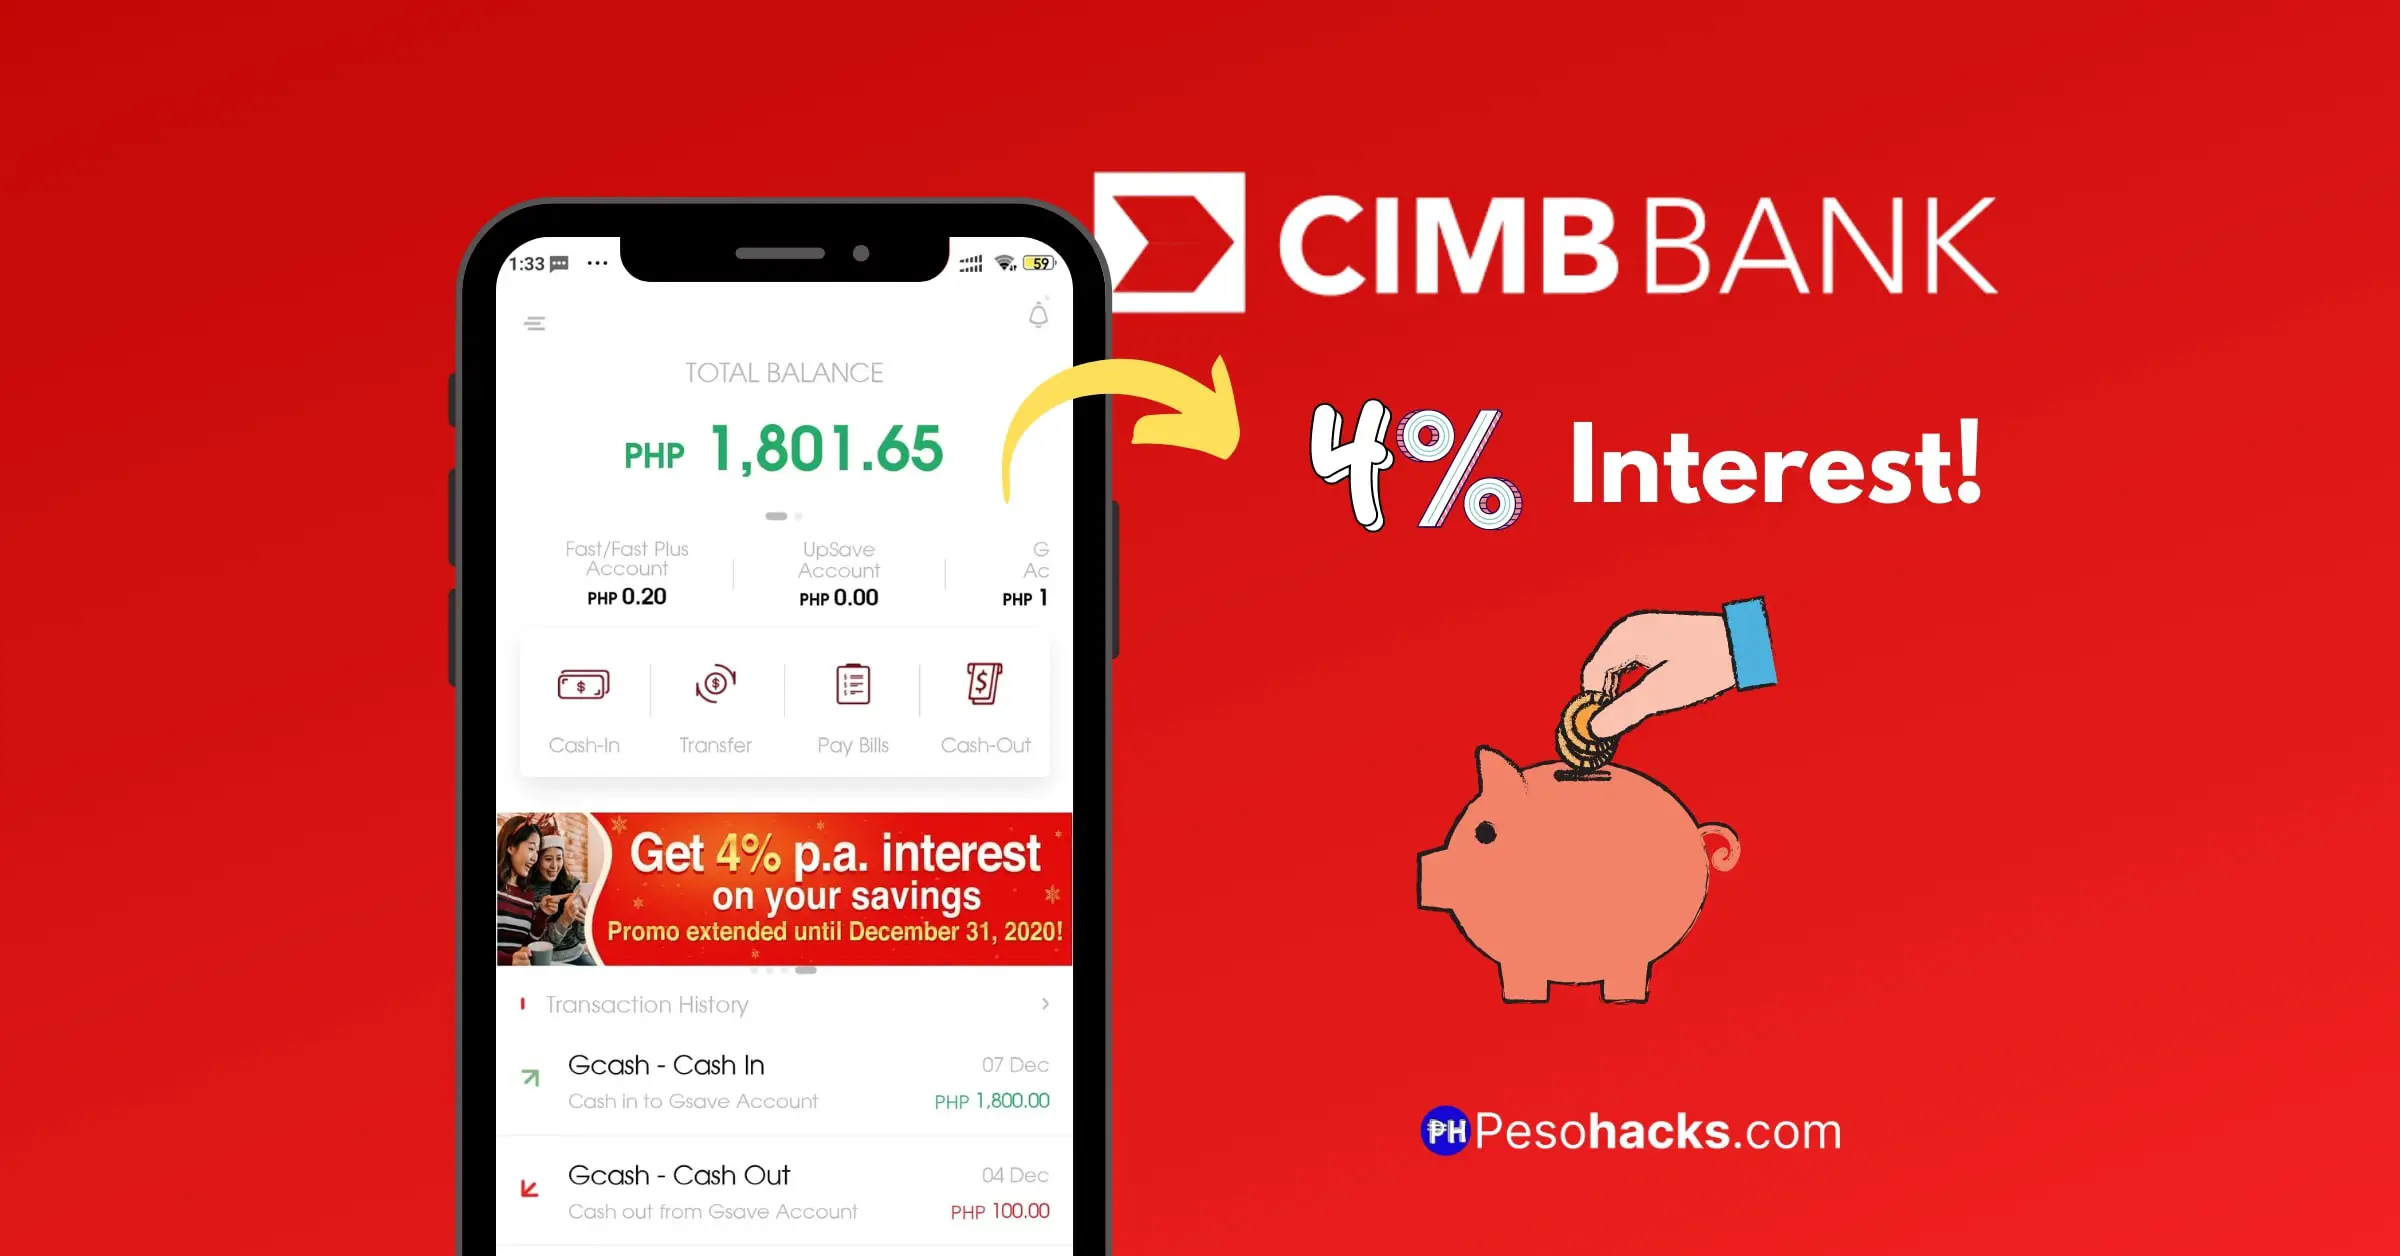 CIMB bank review